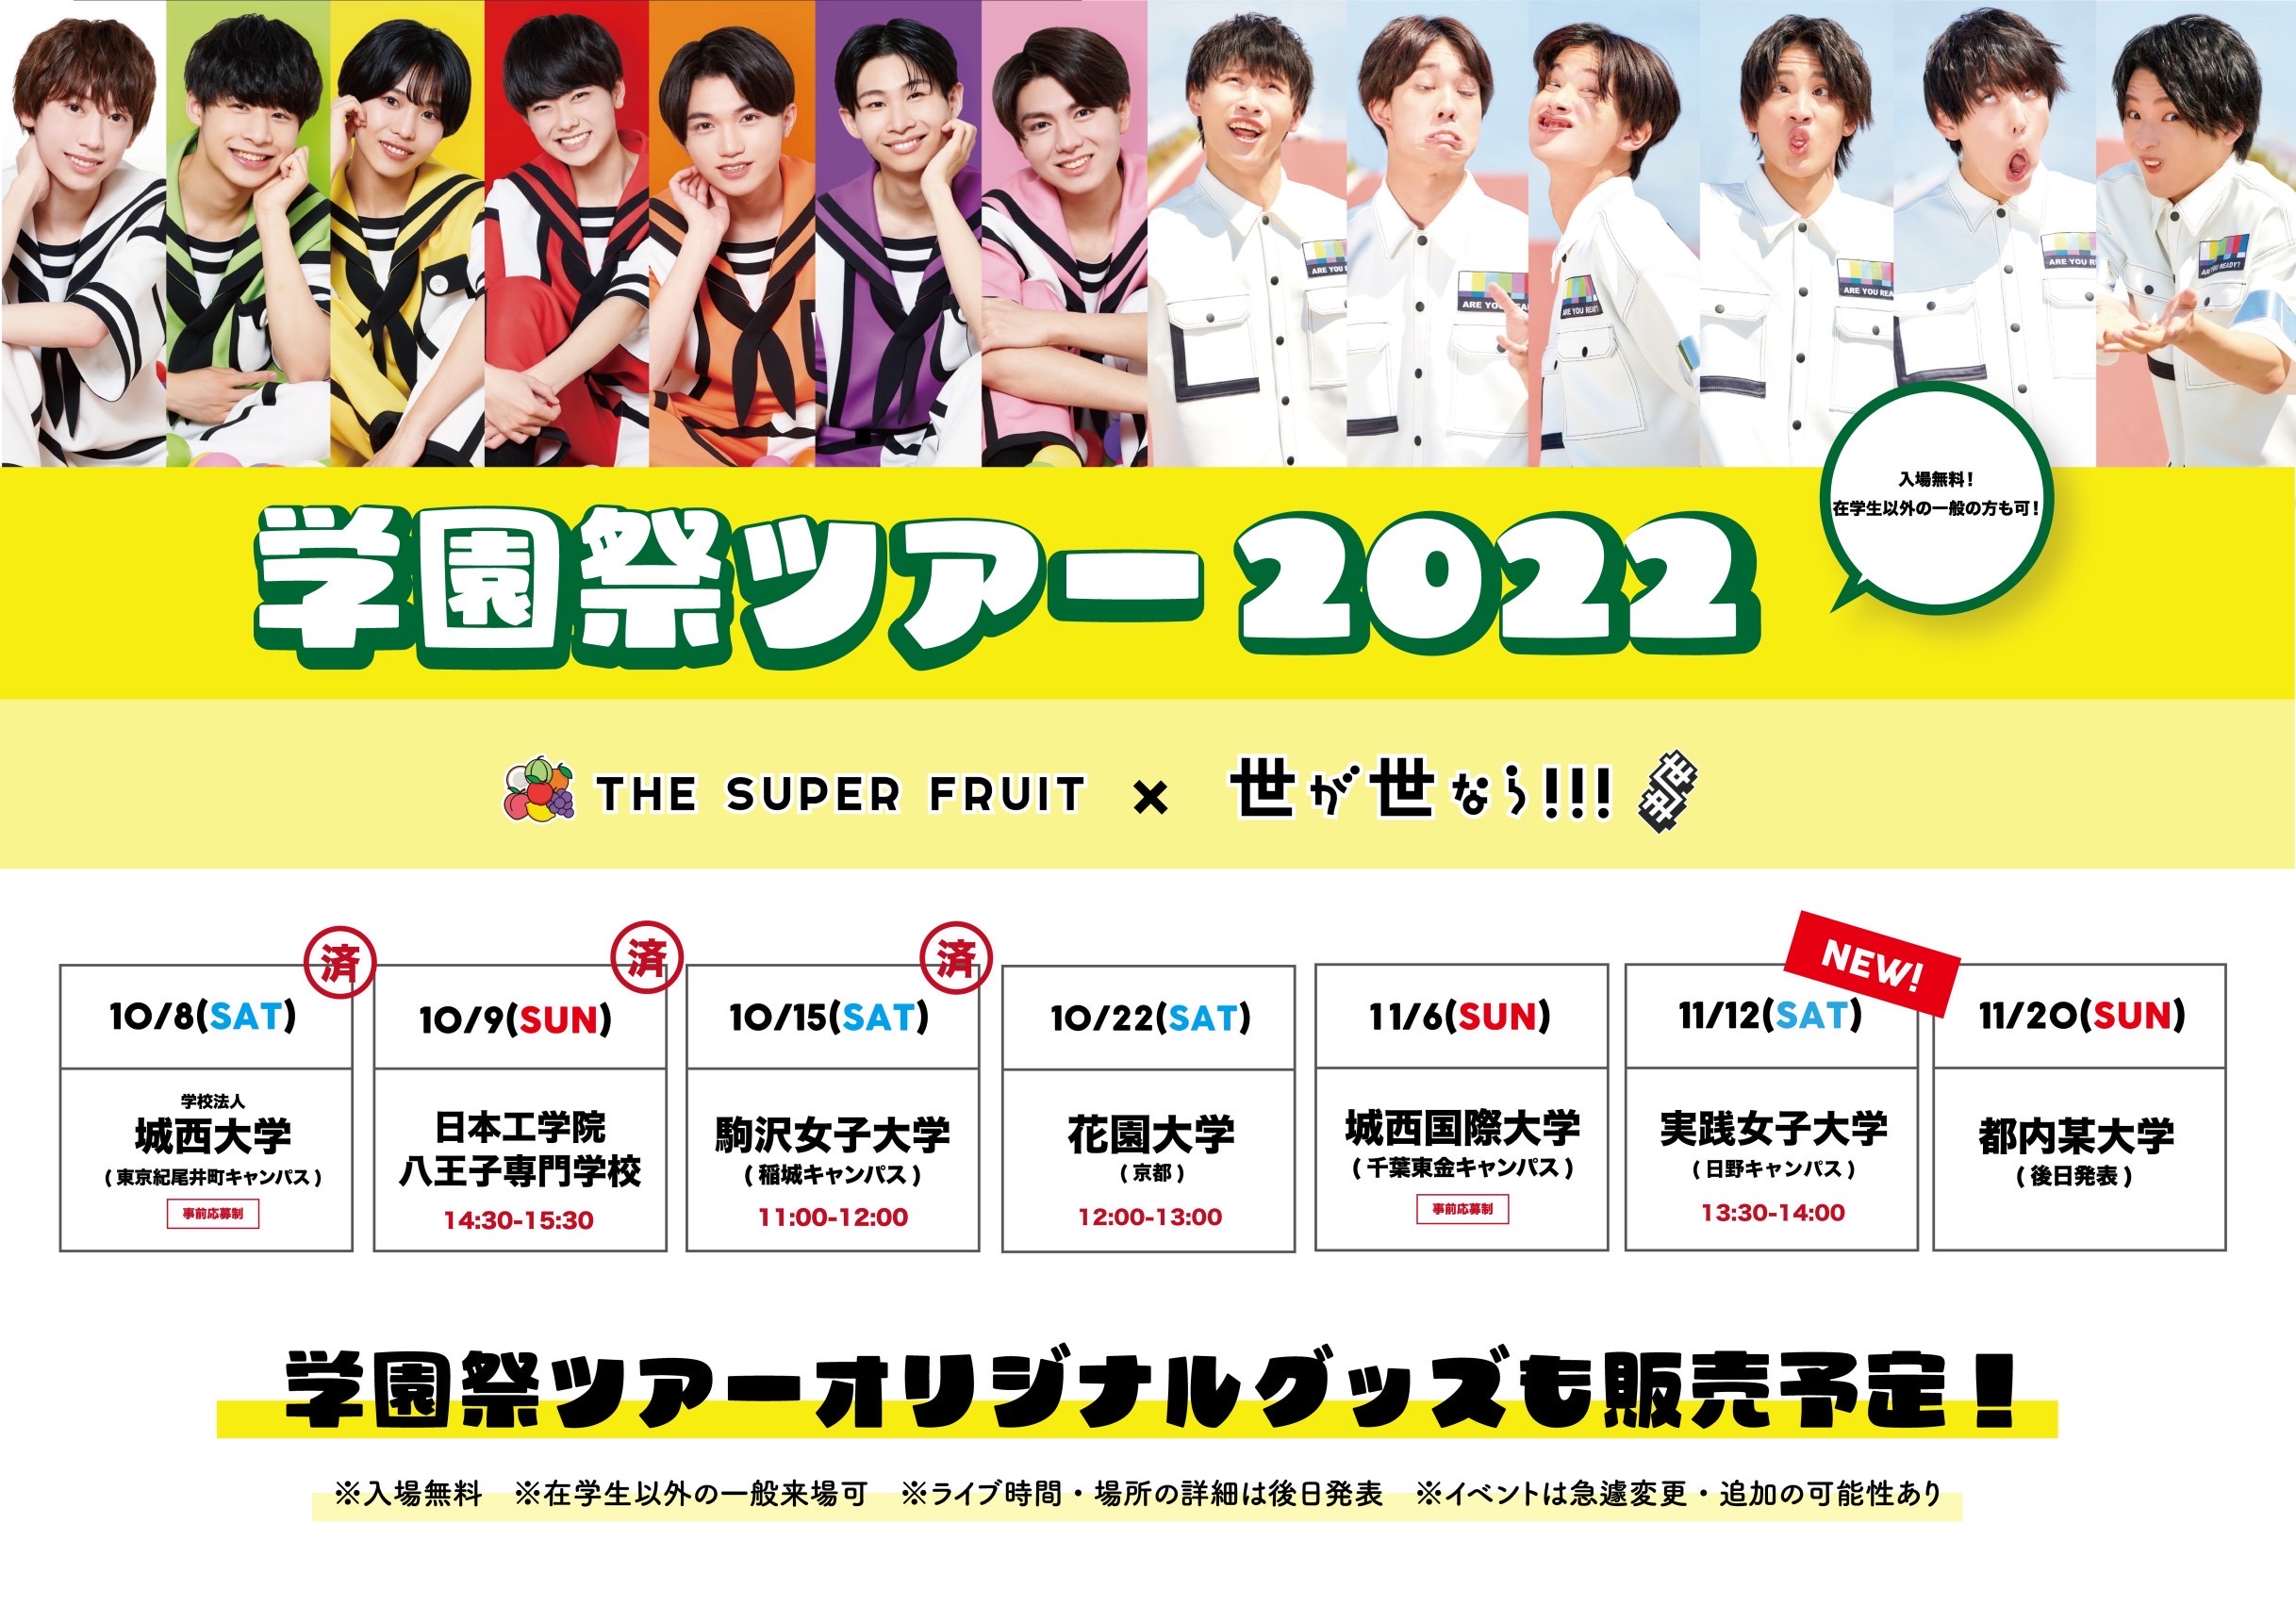 【NEWS】11月12日(土)「THE SUPER FRUIT × 世が世なら!!! 学園祭ツアー2022」実践女子大学 常盤祭2022への出演が決定しました！